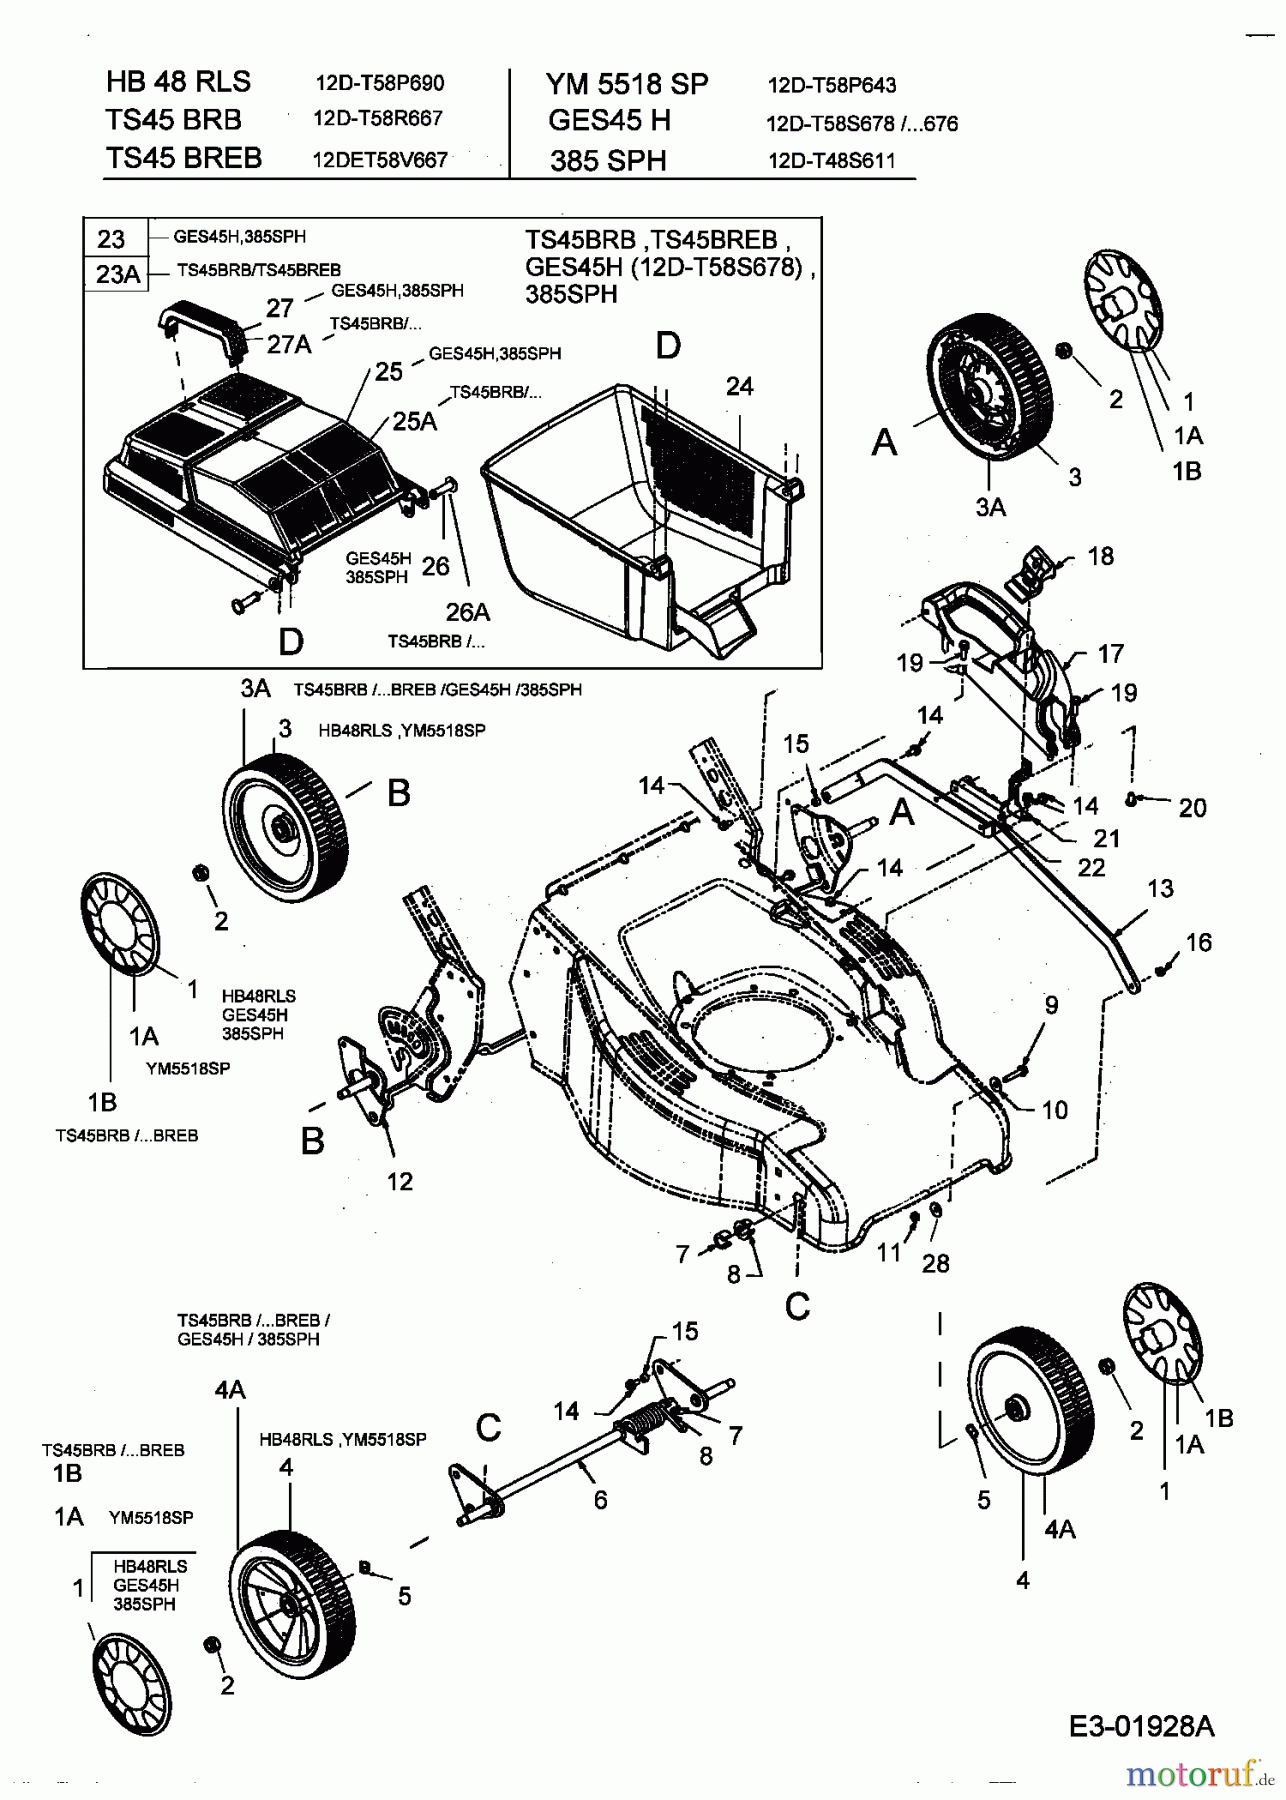  Turbo Silent Motormäher mit Antrieb TS 45 BR-B 12D-T58R667  (2004) Grasfangkorb, Räder, Schnitthöhenverstellung